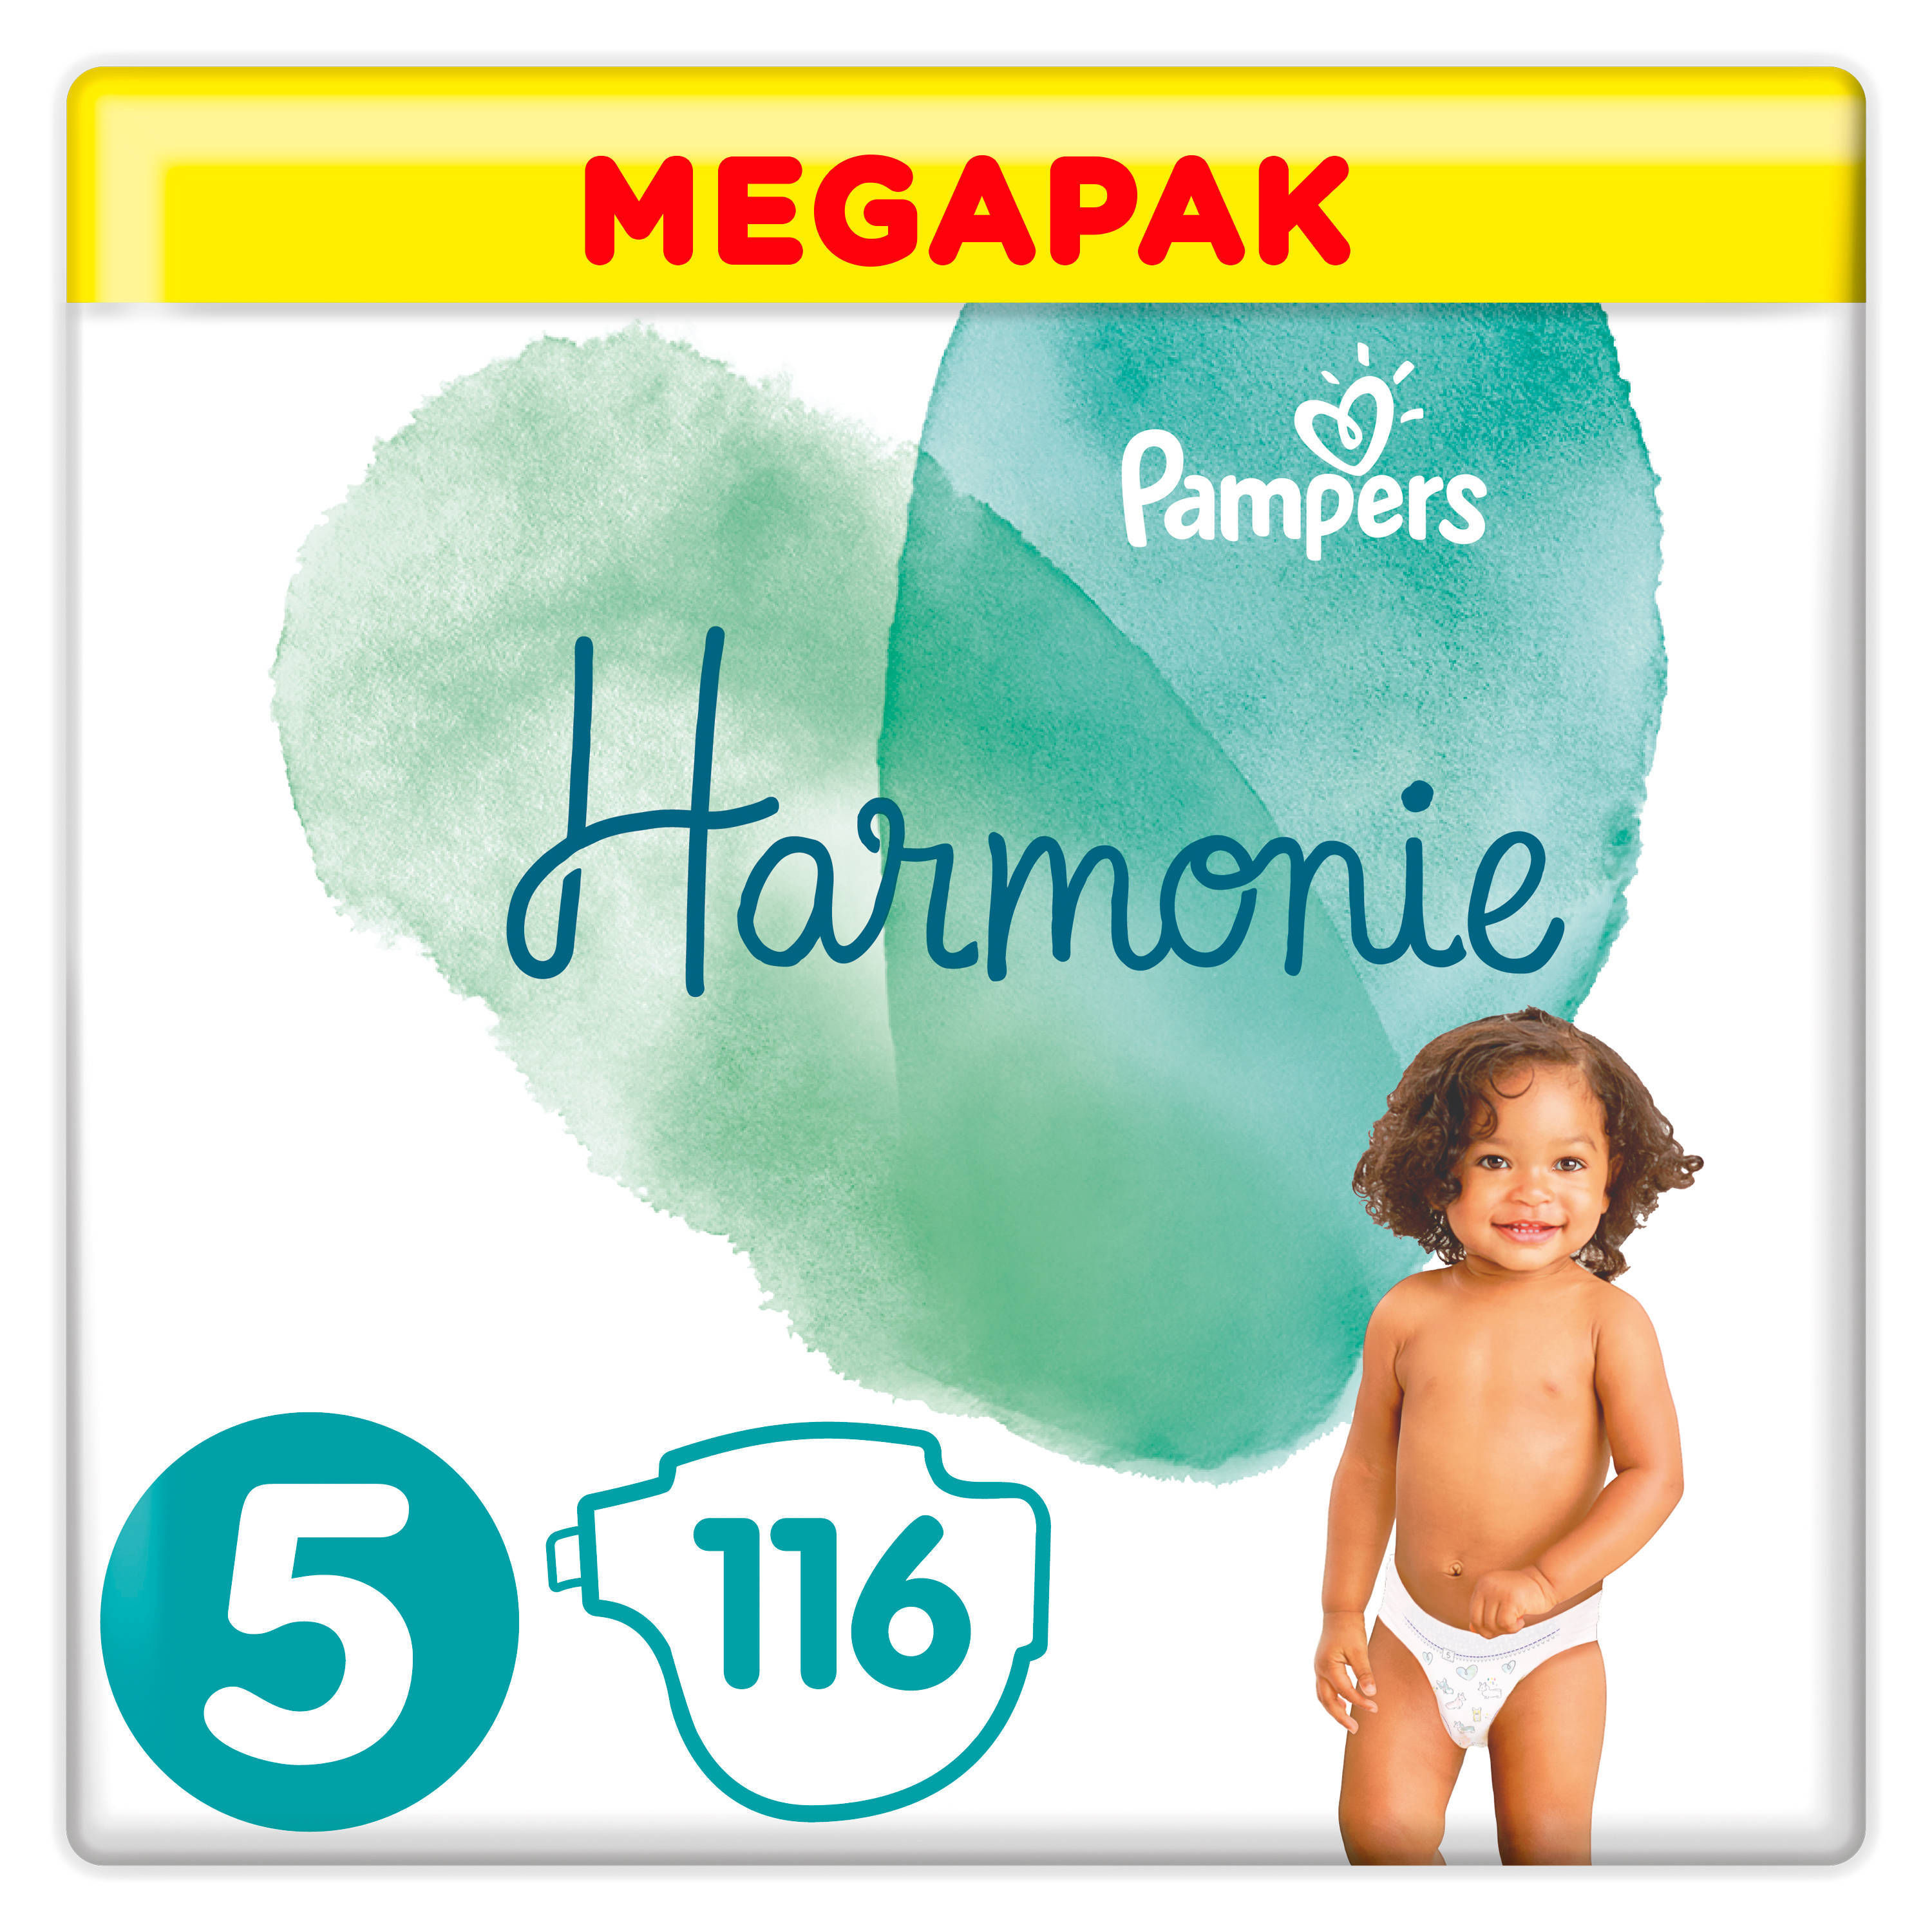 Pampers Harmonie Megapack Maat 5 (11kg+) 116 luiers online kopen